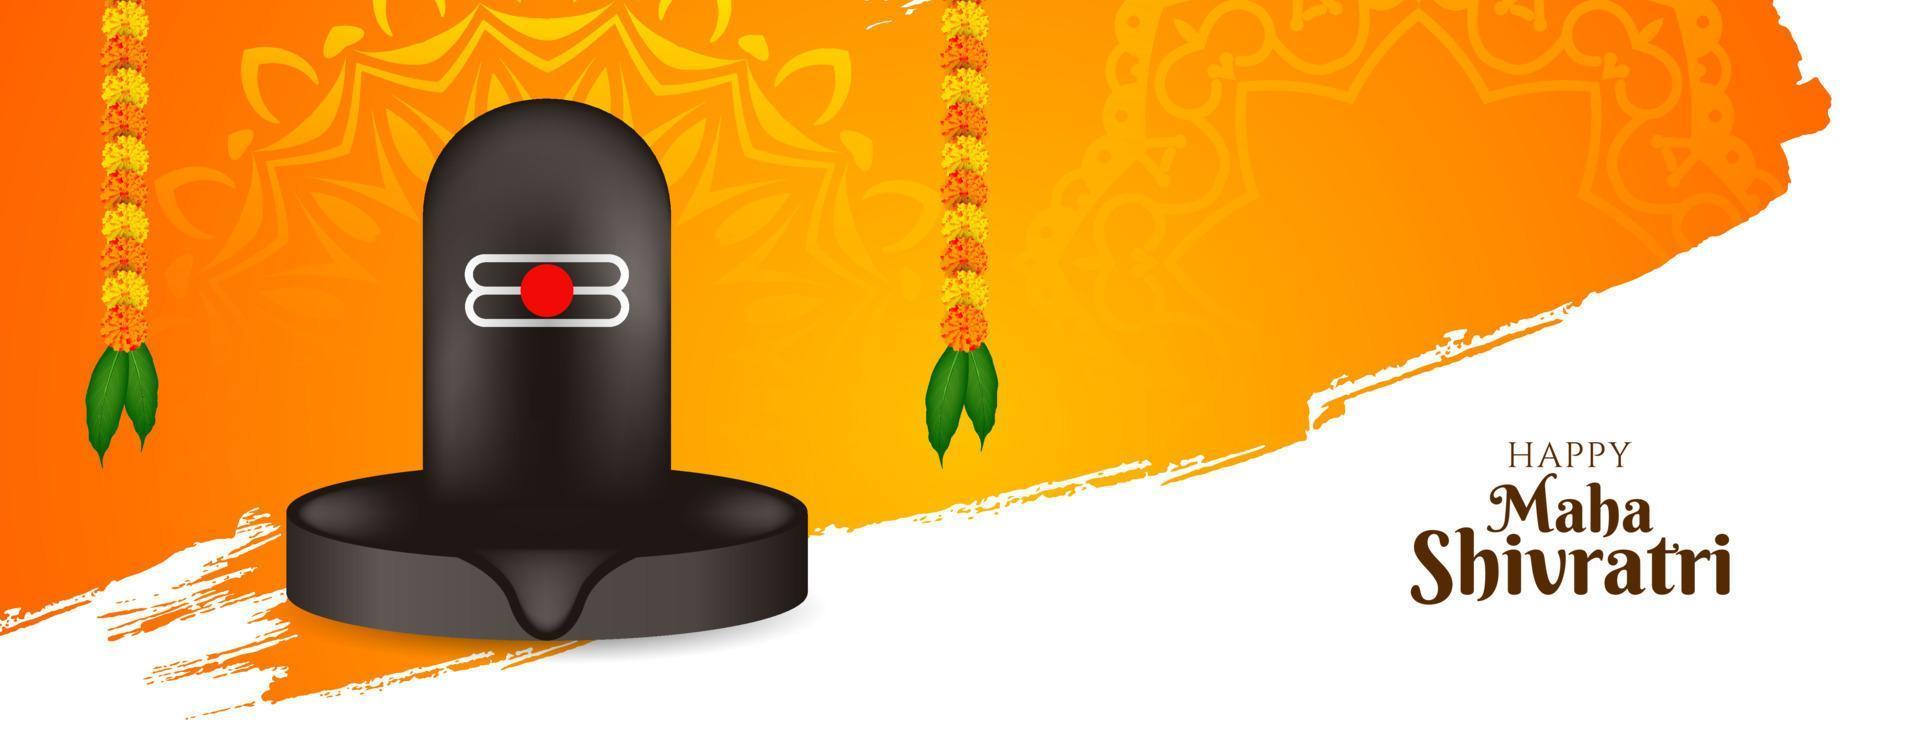 banner mitologico classico del festival felice maha shivratri vettore